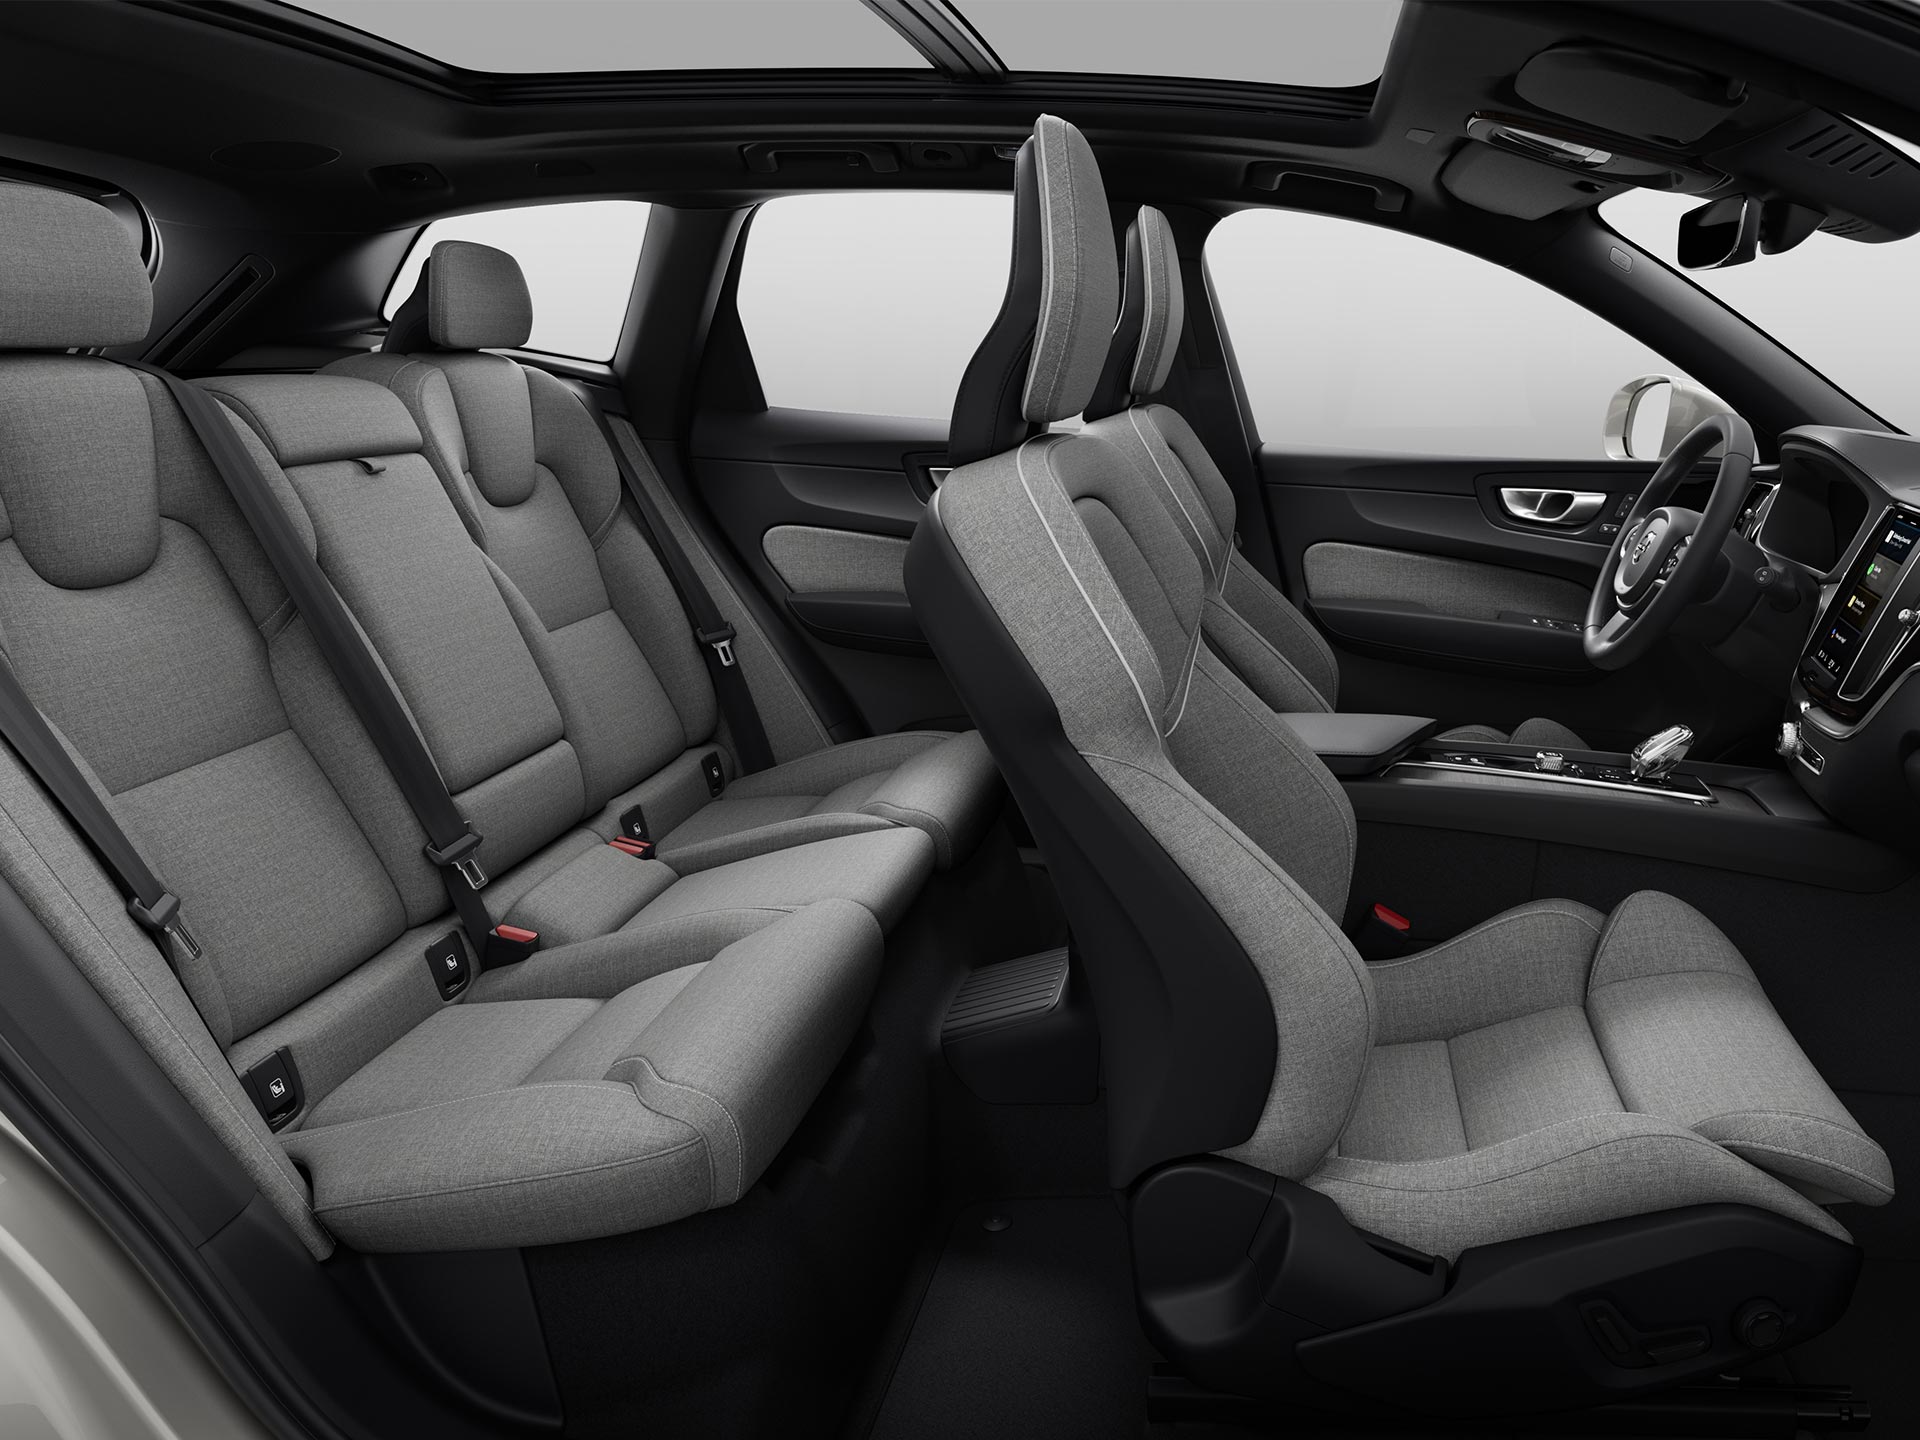 Vista panorámica del espacioso habitáculo y los asientos tapizados de un SUV Volvo.